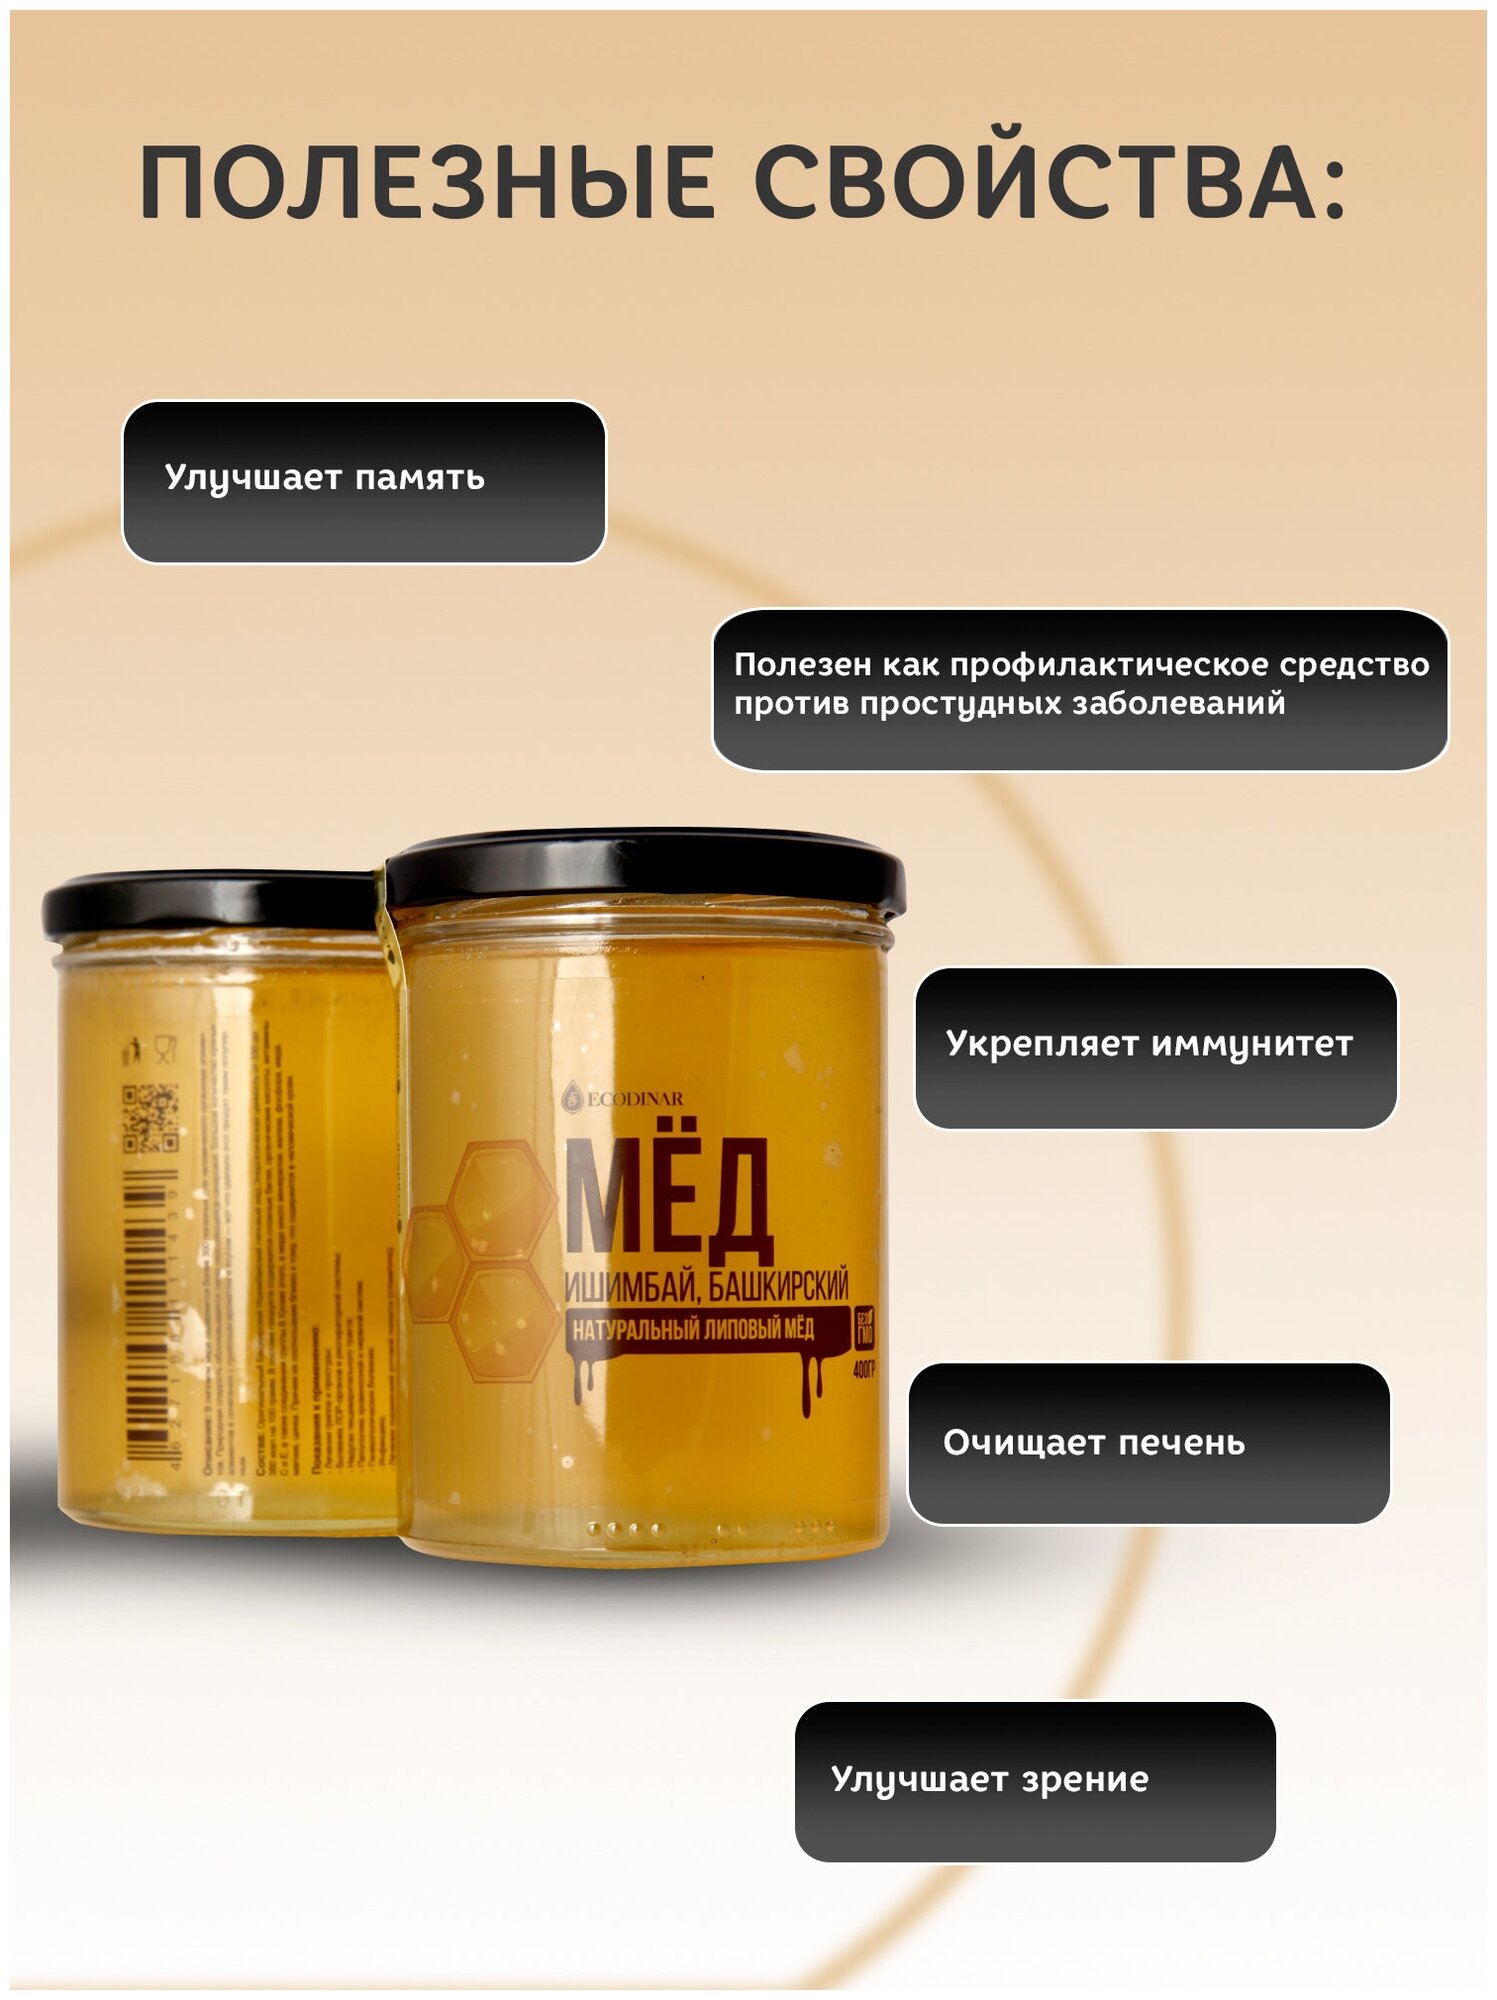 Натуральный липовый мед Ишимбай, Башкирский, постный продукт от экодинар, 230 гр. - фотография № 3